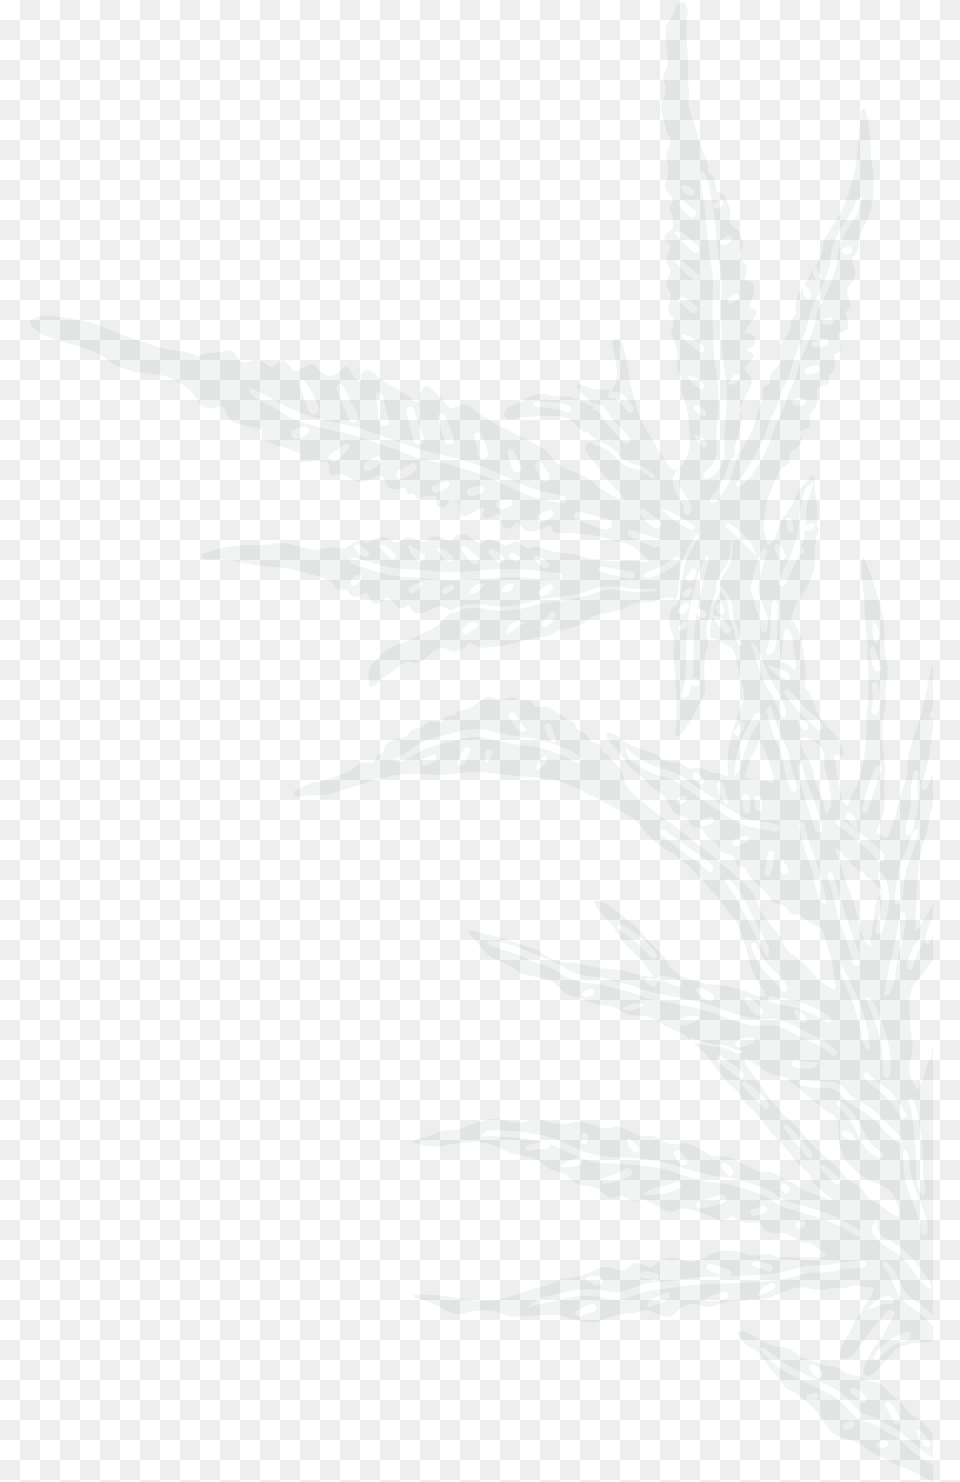 Drawing, Leaf, Plant, Hemp, Weed Png Image